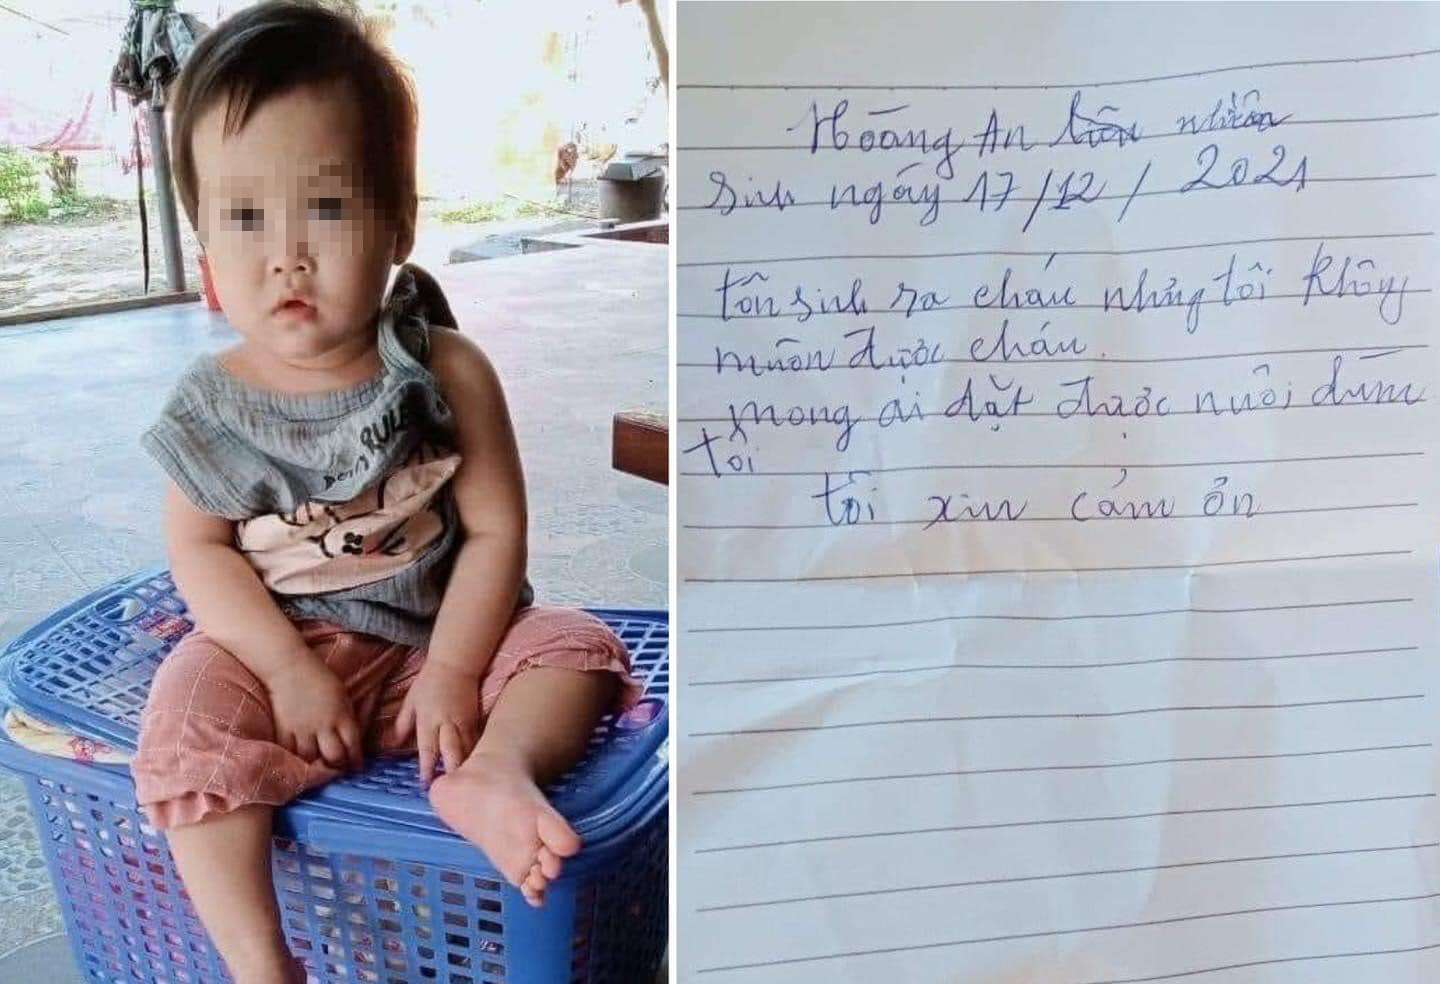 Bé gái 1 tuổi được phát hiện ngồi khóc bên lề đường cùng lá thư nhờ nuôi hộ - Ảnh: Khánh Trung